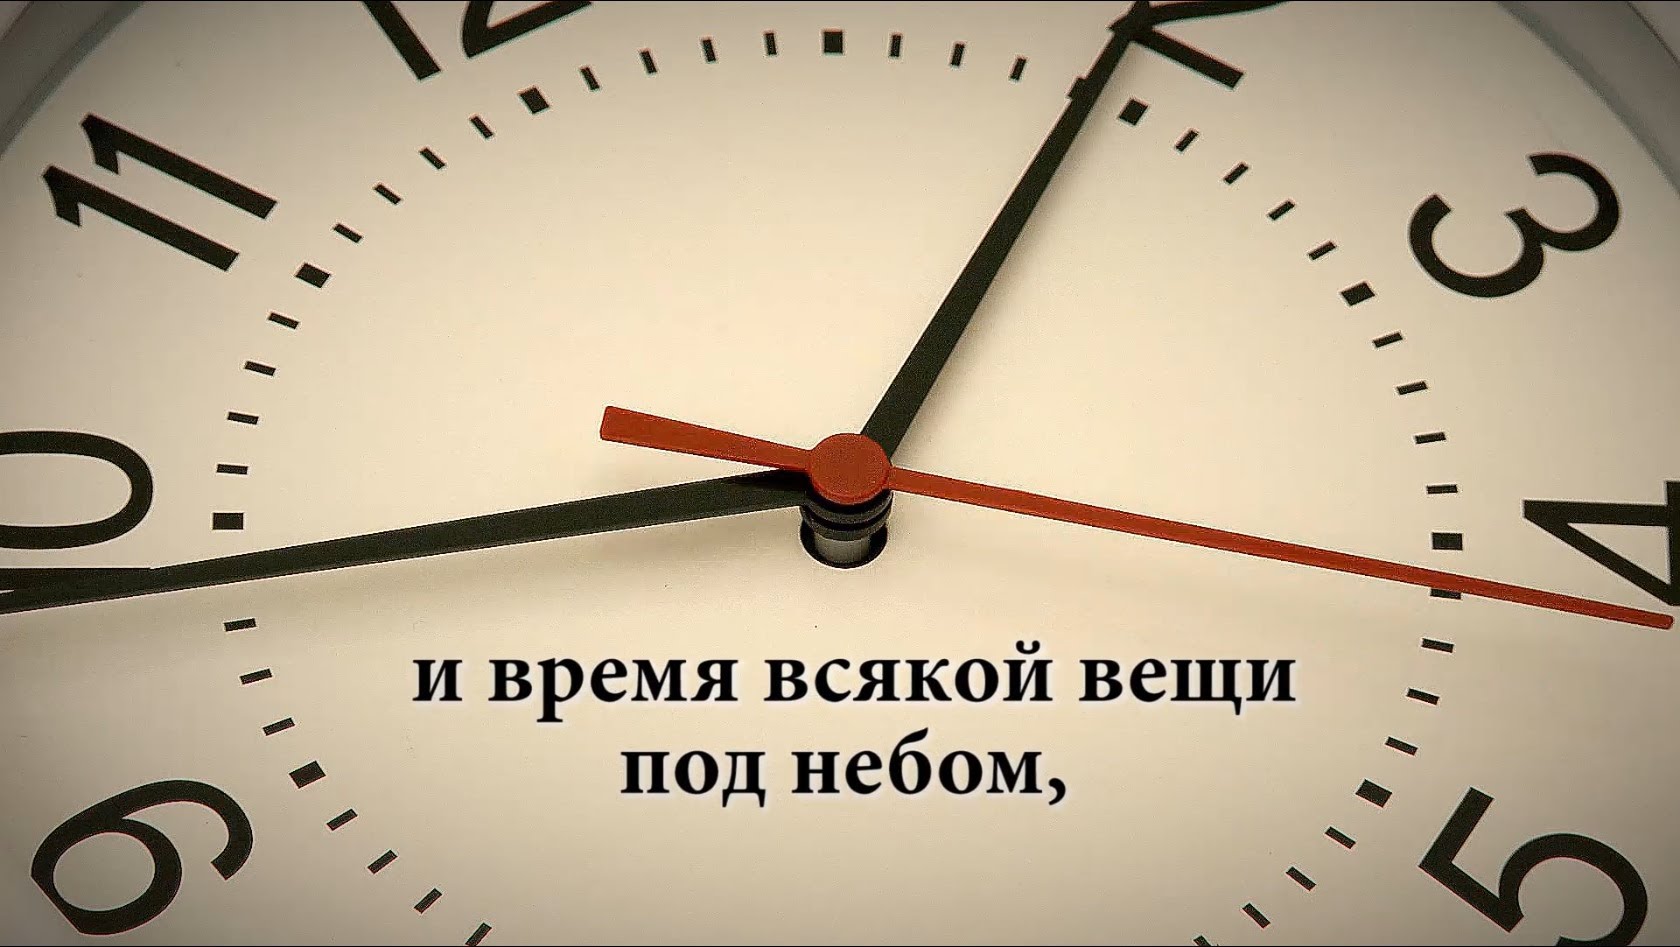 Посмотри времени очень мало. Картинки цитаты про время. Афоризмы про время. Всему свое время. Время картинки со смыслом.